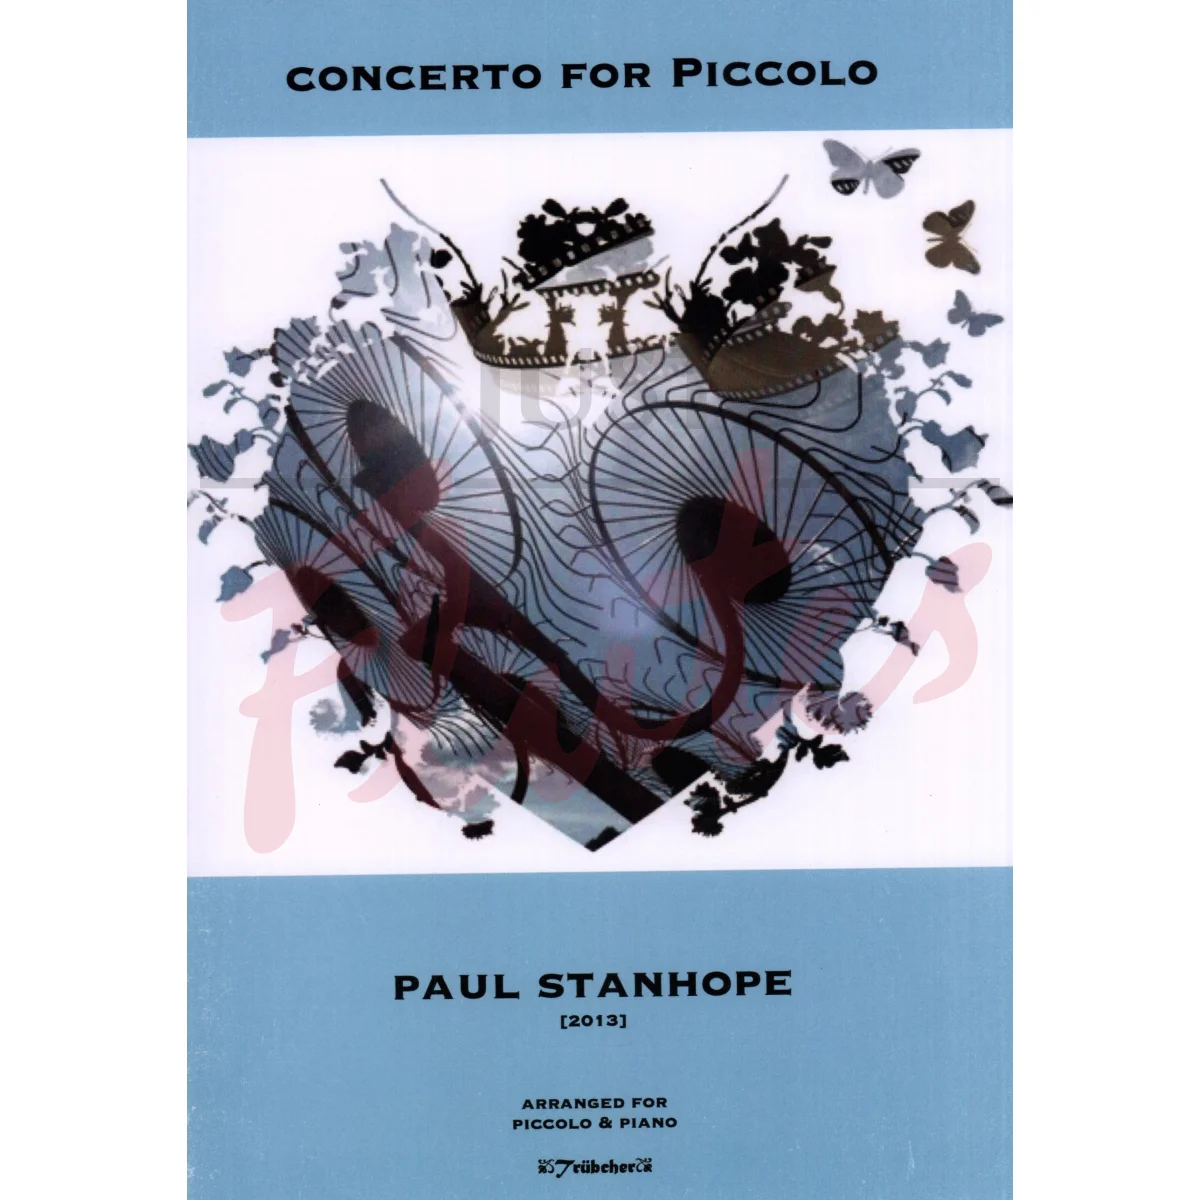 Concerto for Piccolo